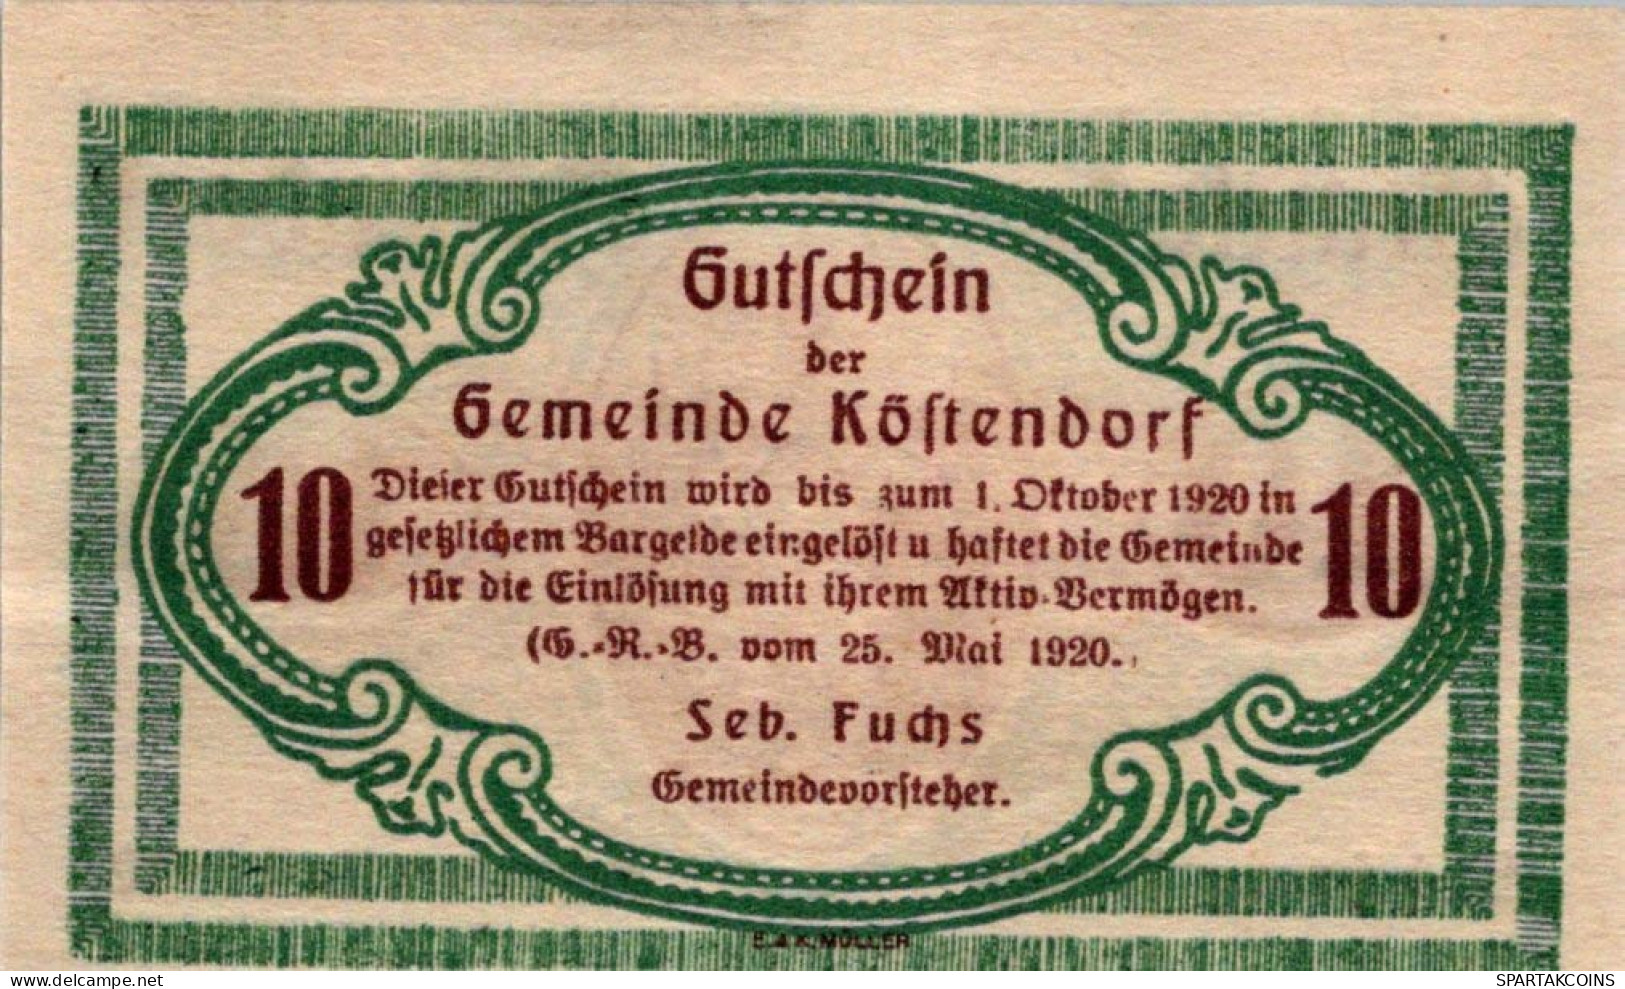 10 HELLER 1920 Stadt KÖSTENDORF Salzburg Österreich Notgeld Papiergeld Banknote #PG902 - [11] Lokale Uitgaven